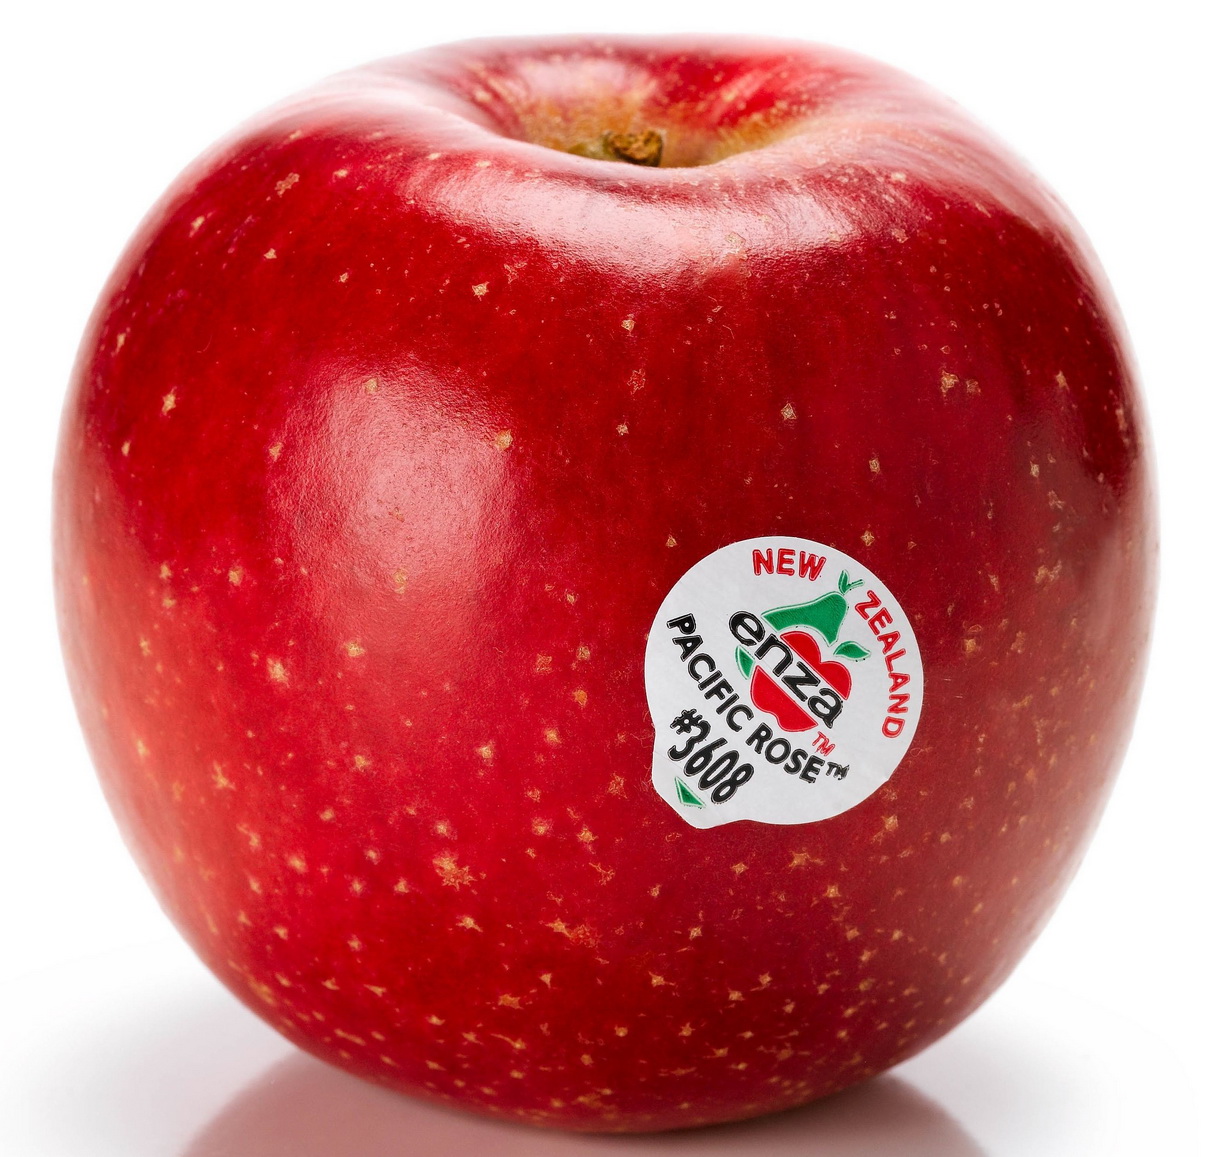 แอปเปิ้ลพันธุ์ไหนอร่อย แอปเปิ้ลกินทั้งเปลือกได้หมด หรือมีแอปเปิ้ลจากที่ไหนที่ต้องระวัง  เปลือกควรปอกทิ้ง - Pantip